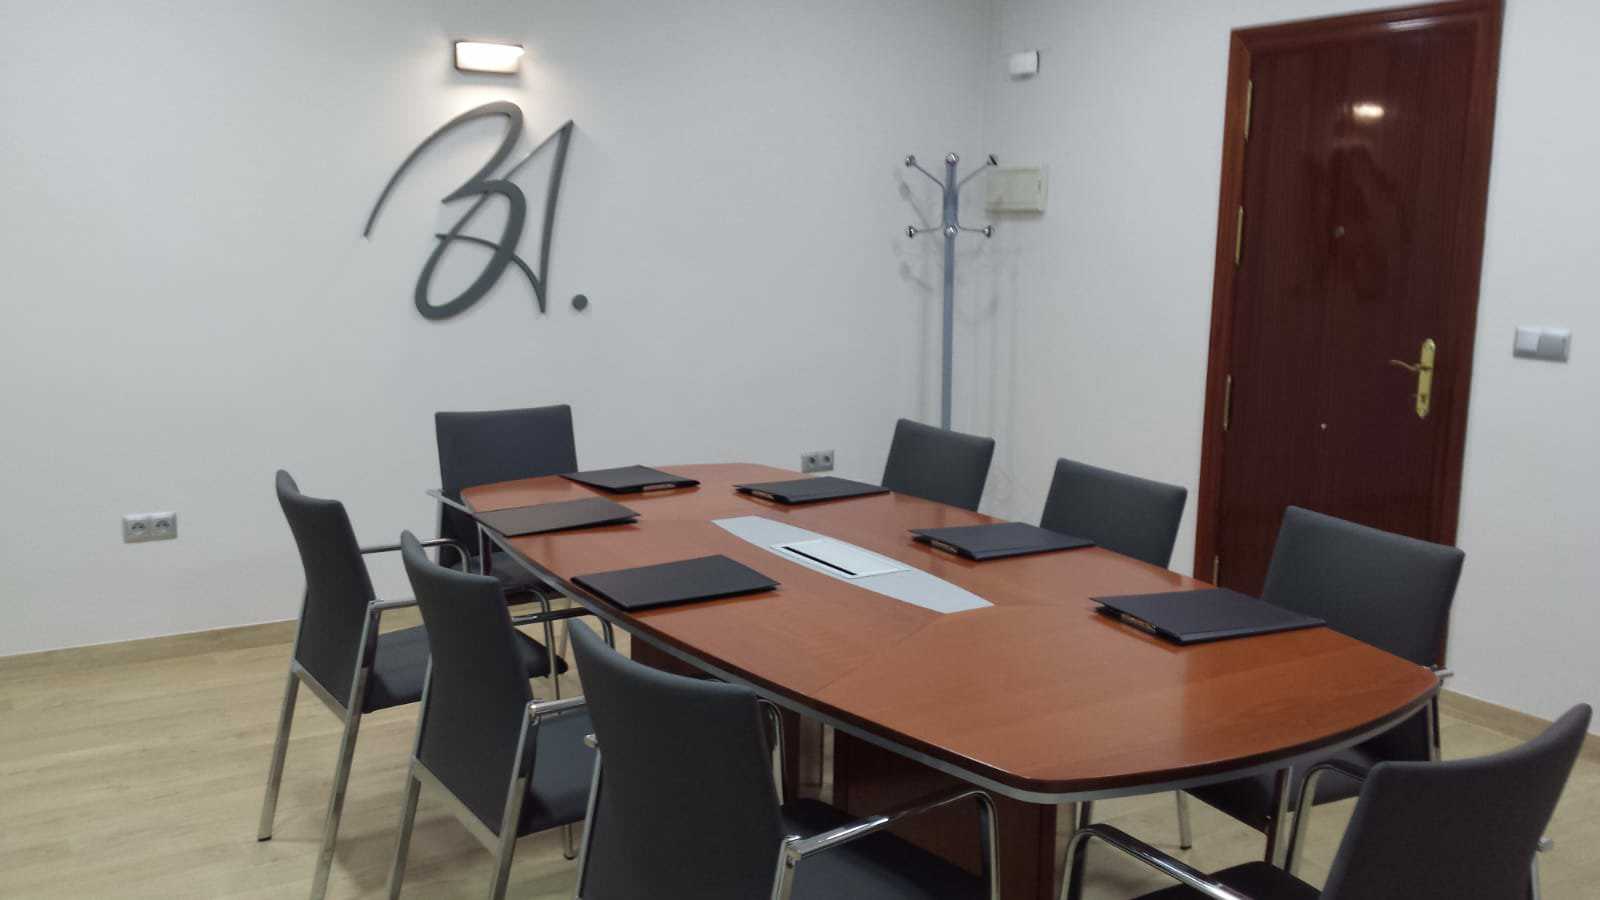 Sala de juntas, Abogados Juan Bautista Cano, en Málaga (proyecto y reforma 2018)